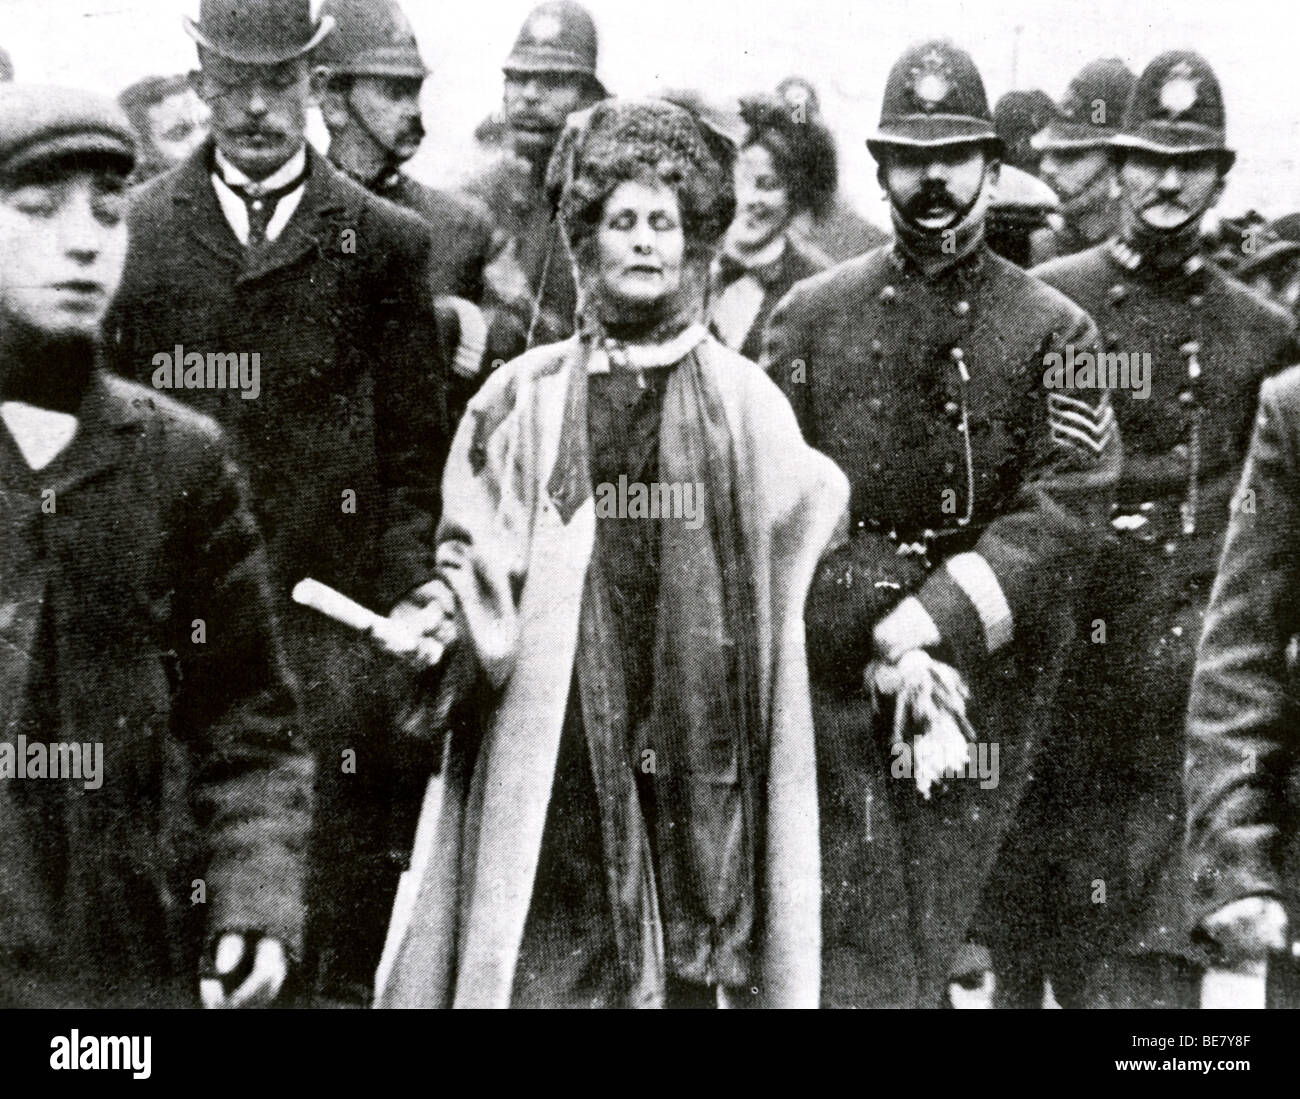 EMILY (EMMELINE) PANKHURST - englischen Suffragetten (1857-1928) unter arrest Stockfoto